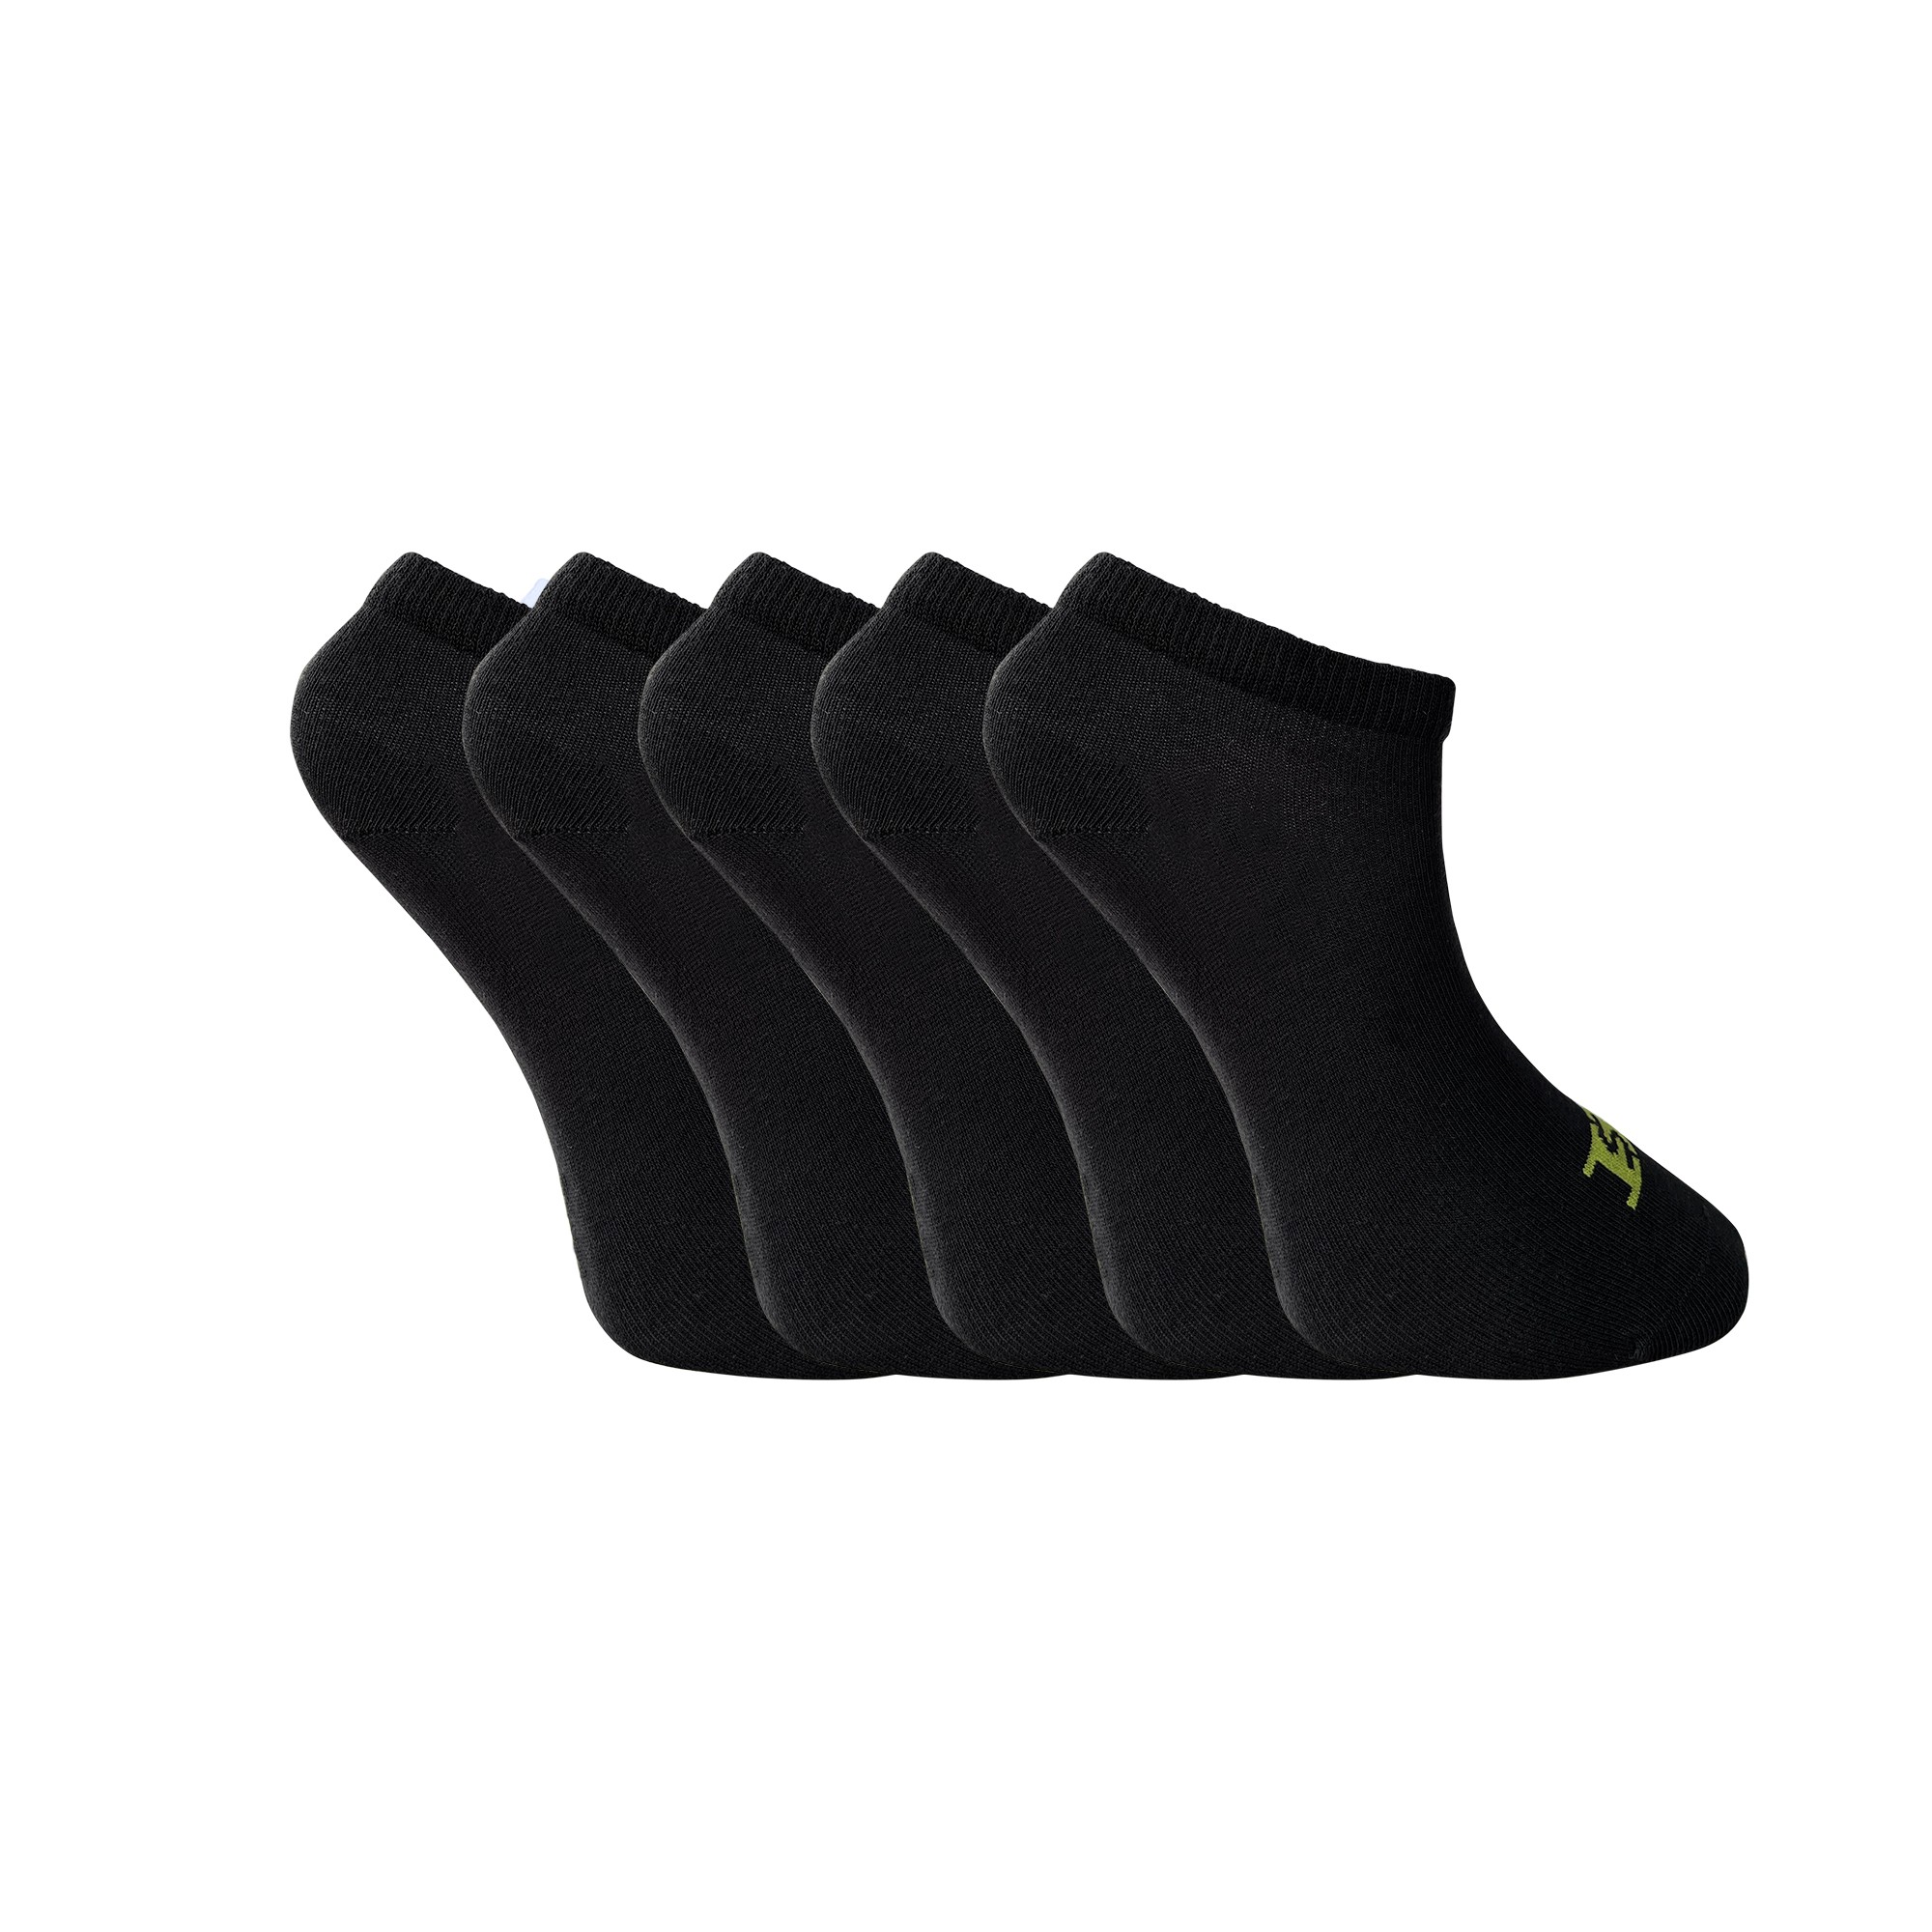 5'li Unisex Patik Çorap İkili - Siyah